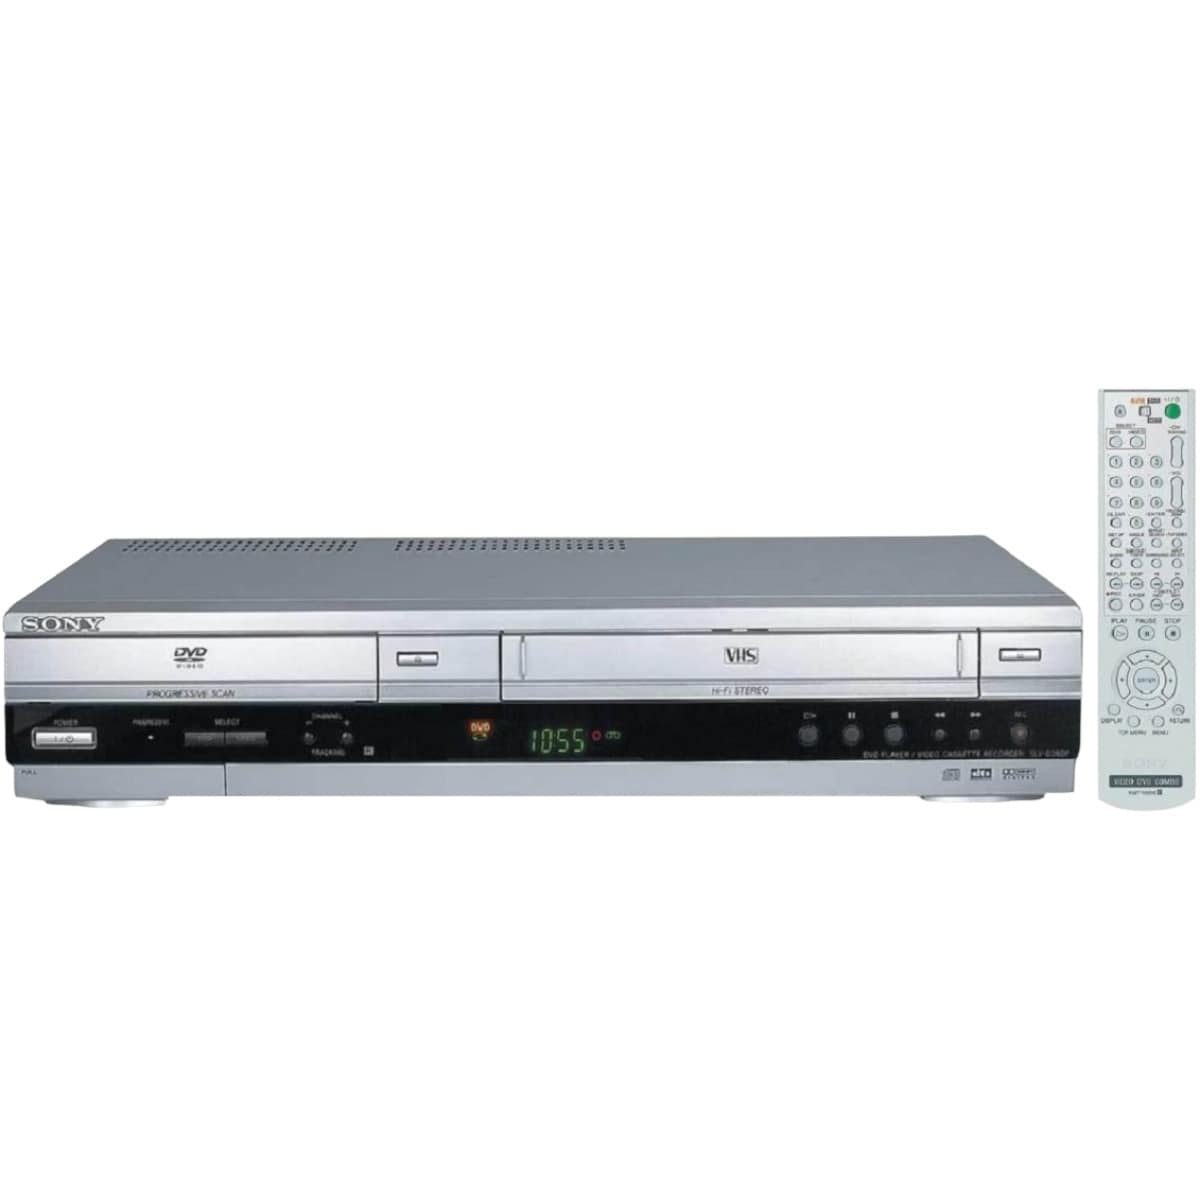  Sony SLV-D360P - Reproductor de DVD/grabadora de casete de vídeo  Combinación de 4 cabezales Reproductor VHS de alta fidelidad / reproductor  de CD con escaneo progresivo, salida digital DTS. (renovado) 